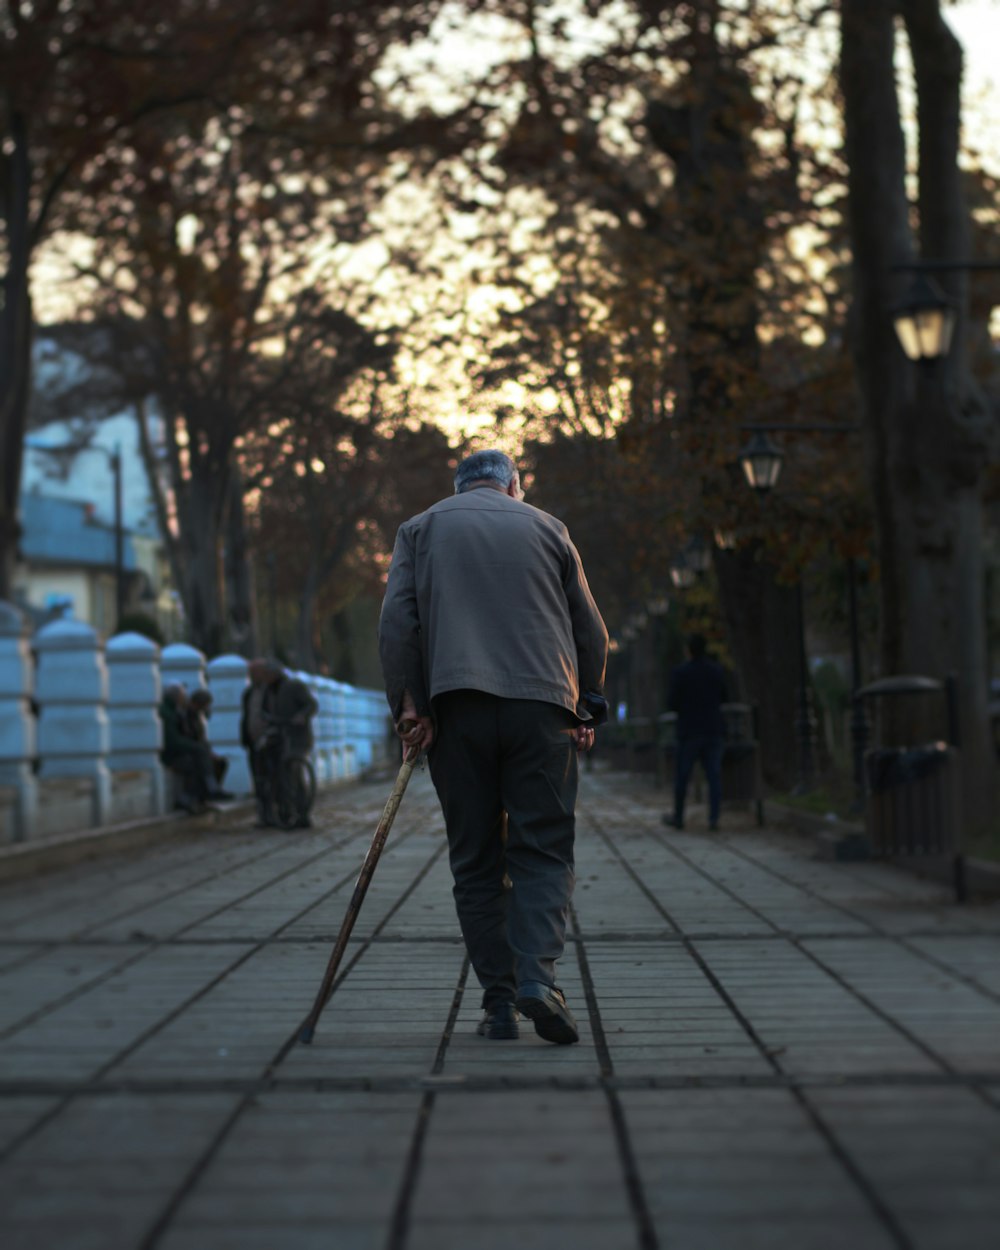 man walking on street holding cane